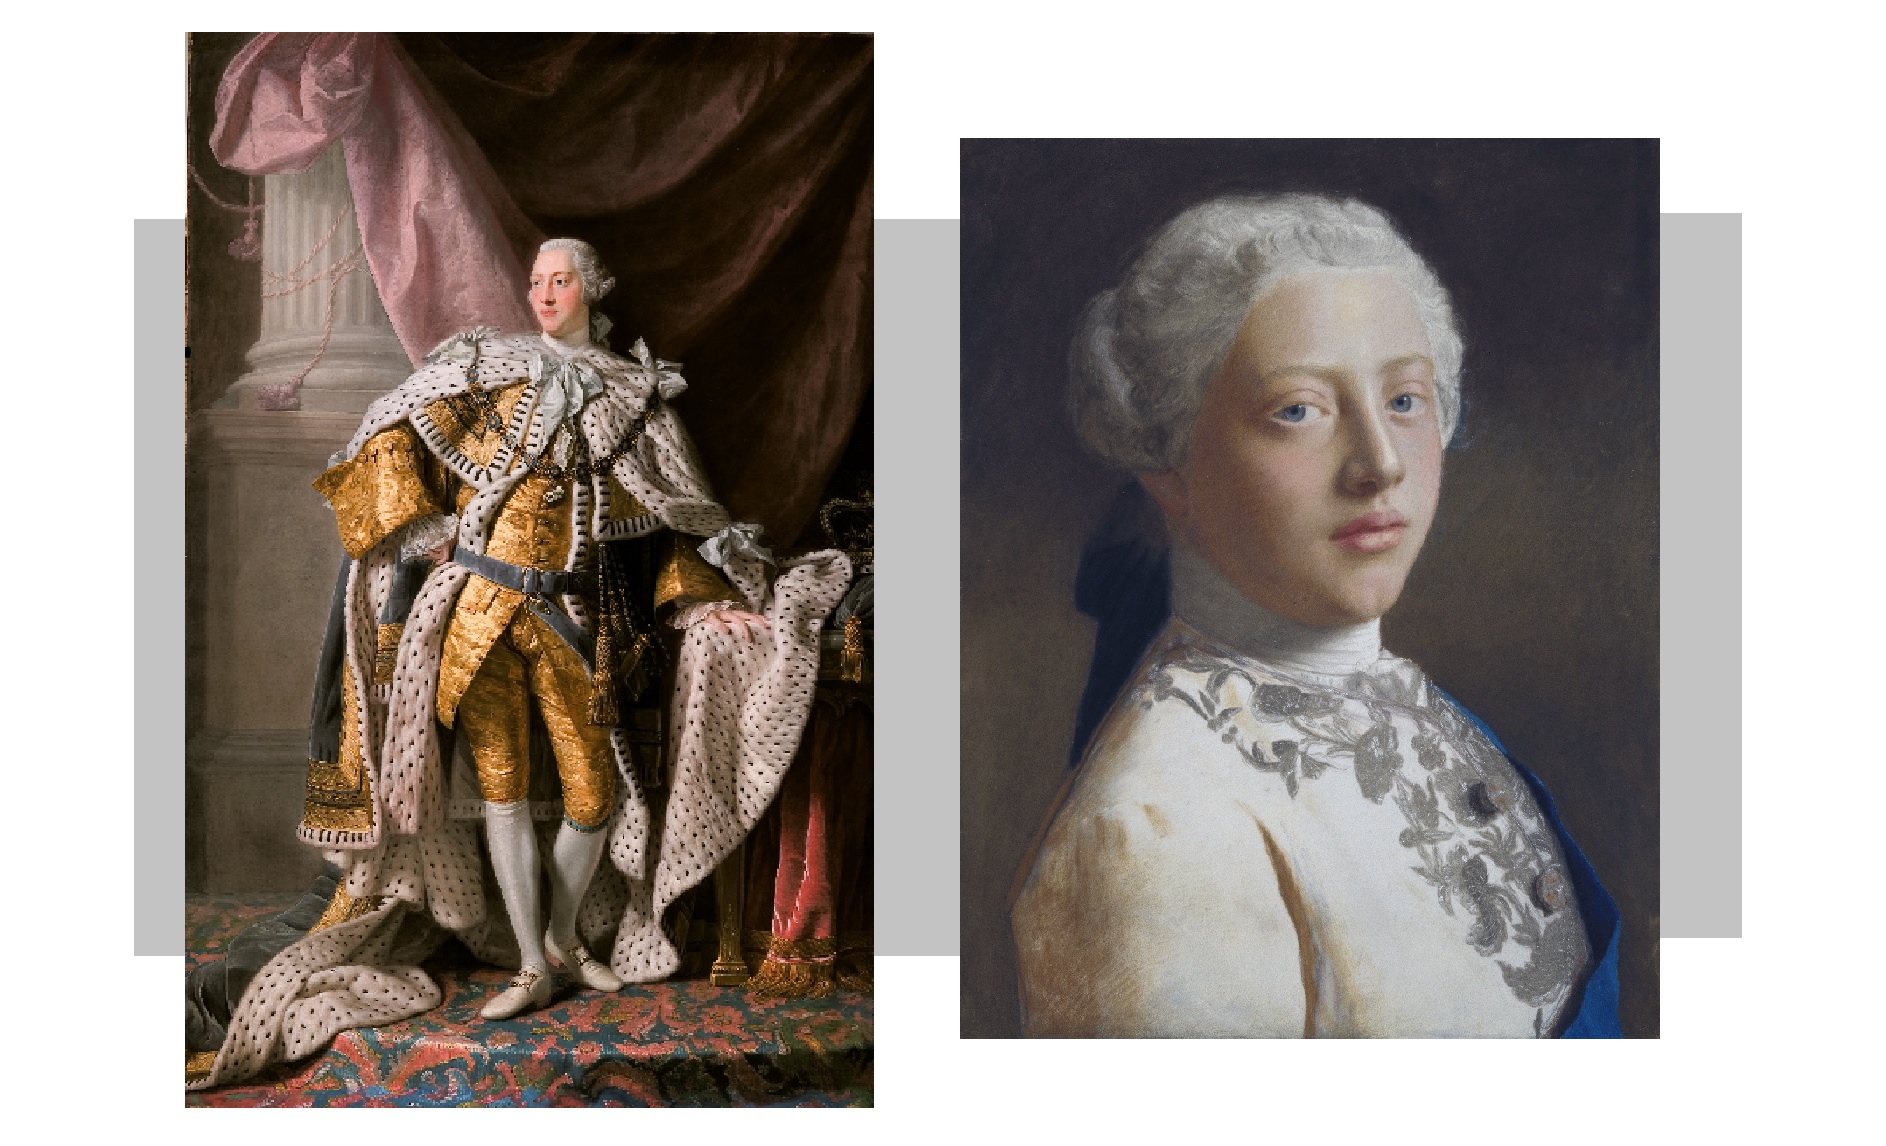 Георг III, король Великобритании. Слева — коронационный портрет кисти Аллана Рэмзи, справа — портрет юного Георга в период, когда он носил титул принца Уэльского, выполнен Жан-Этьеном Лиотаром